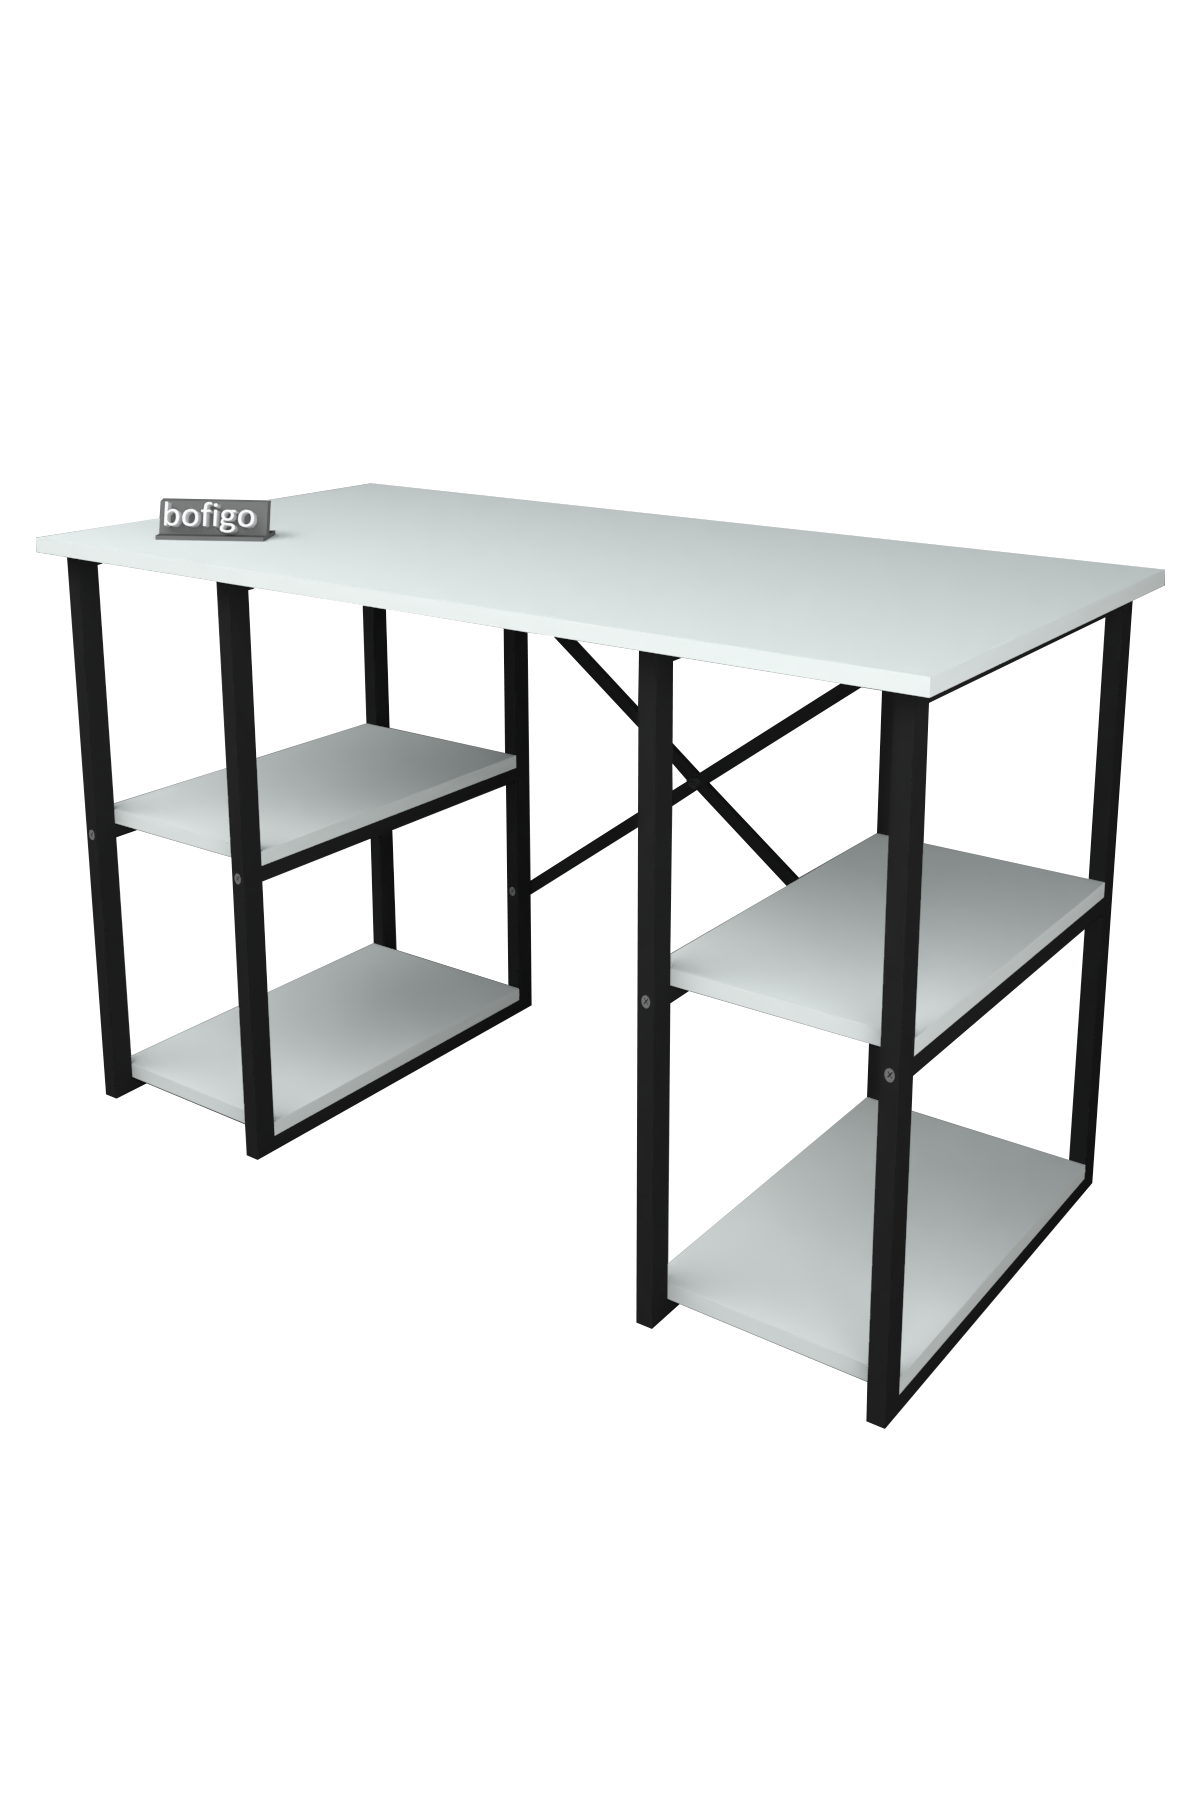 Bofigo 4 Shelf Desk 60x120 cm White